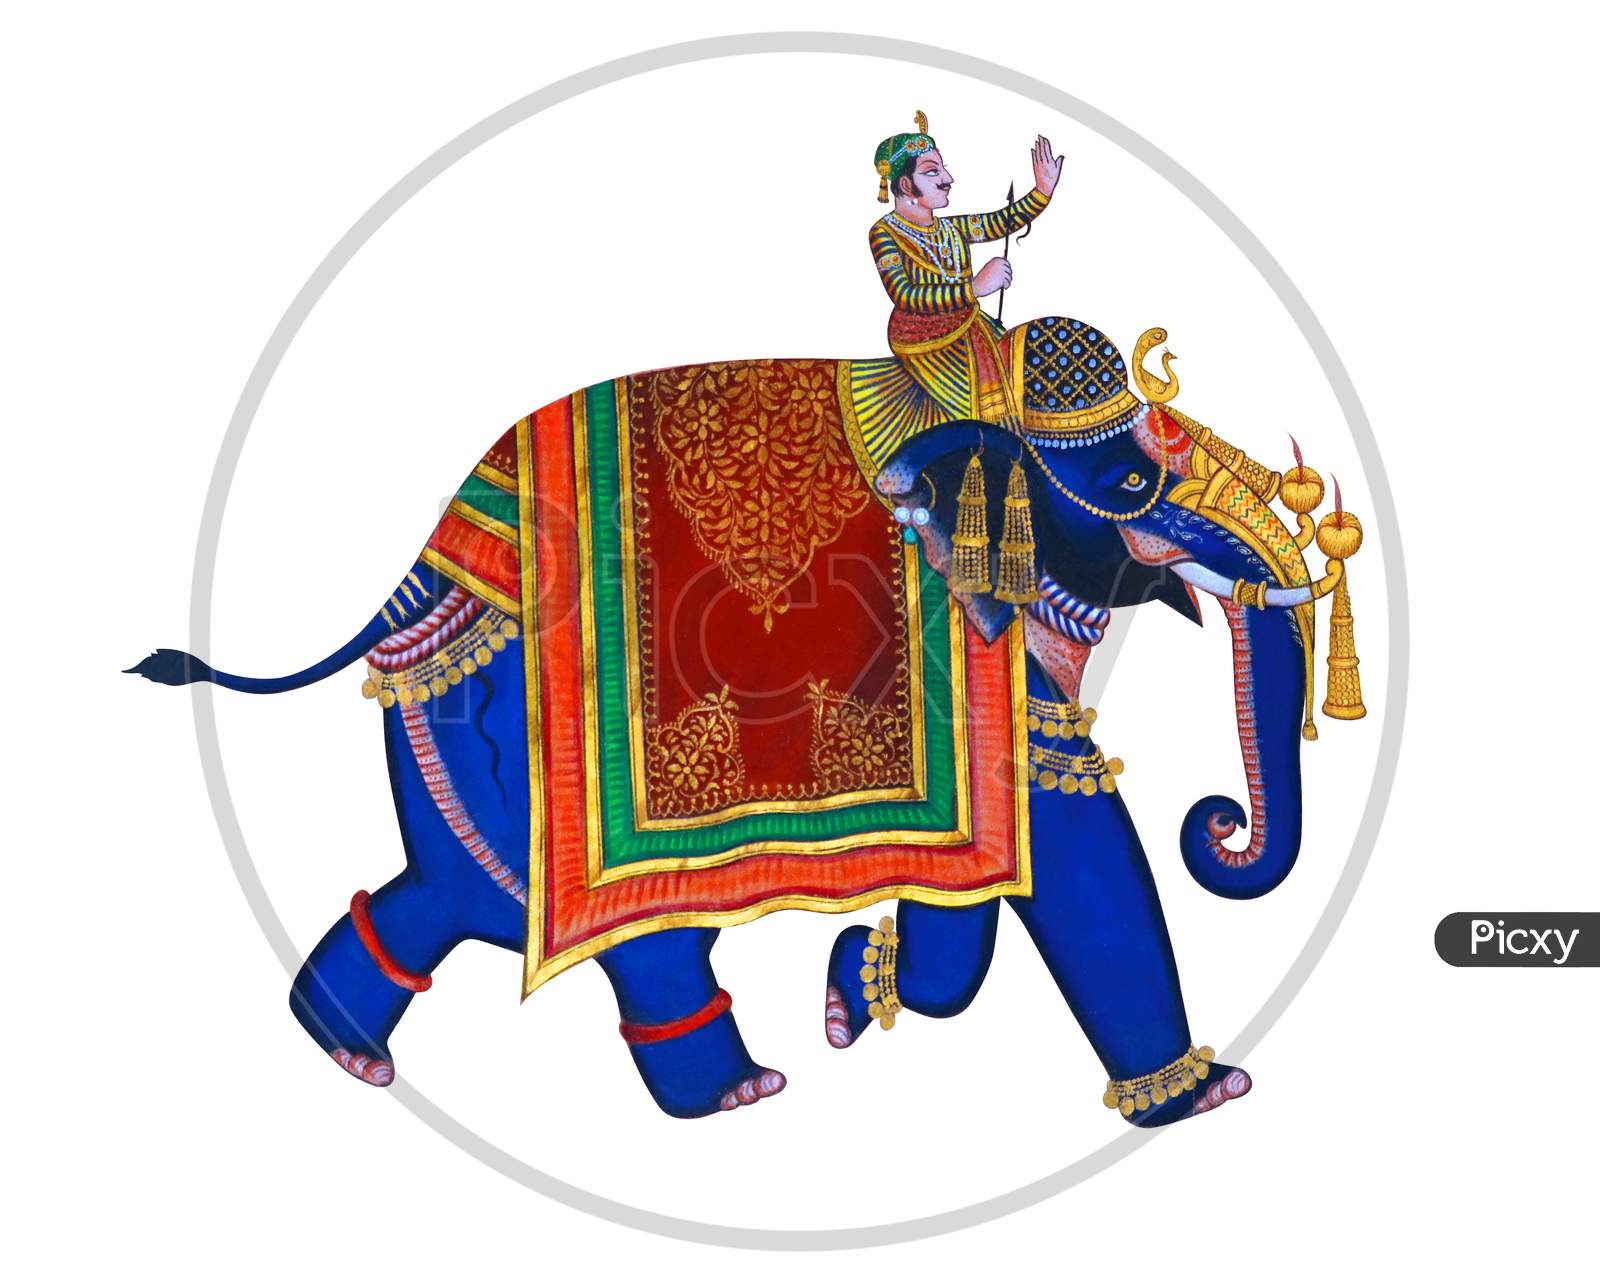 Traditional Elephant Indian Style, Colorful Decorative Elephant With Jockey. Isolated On White Background